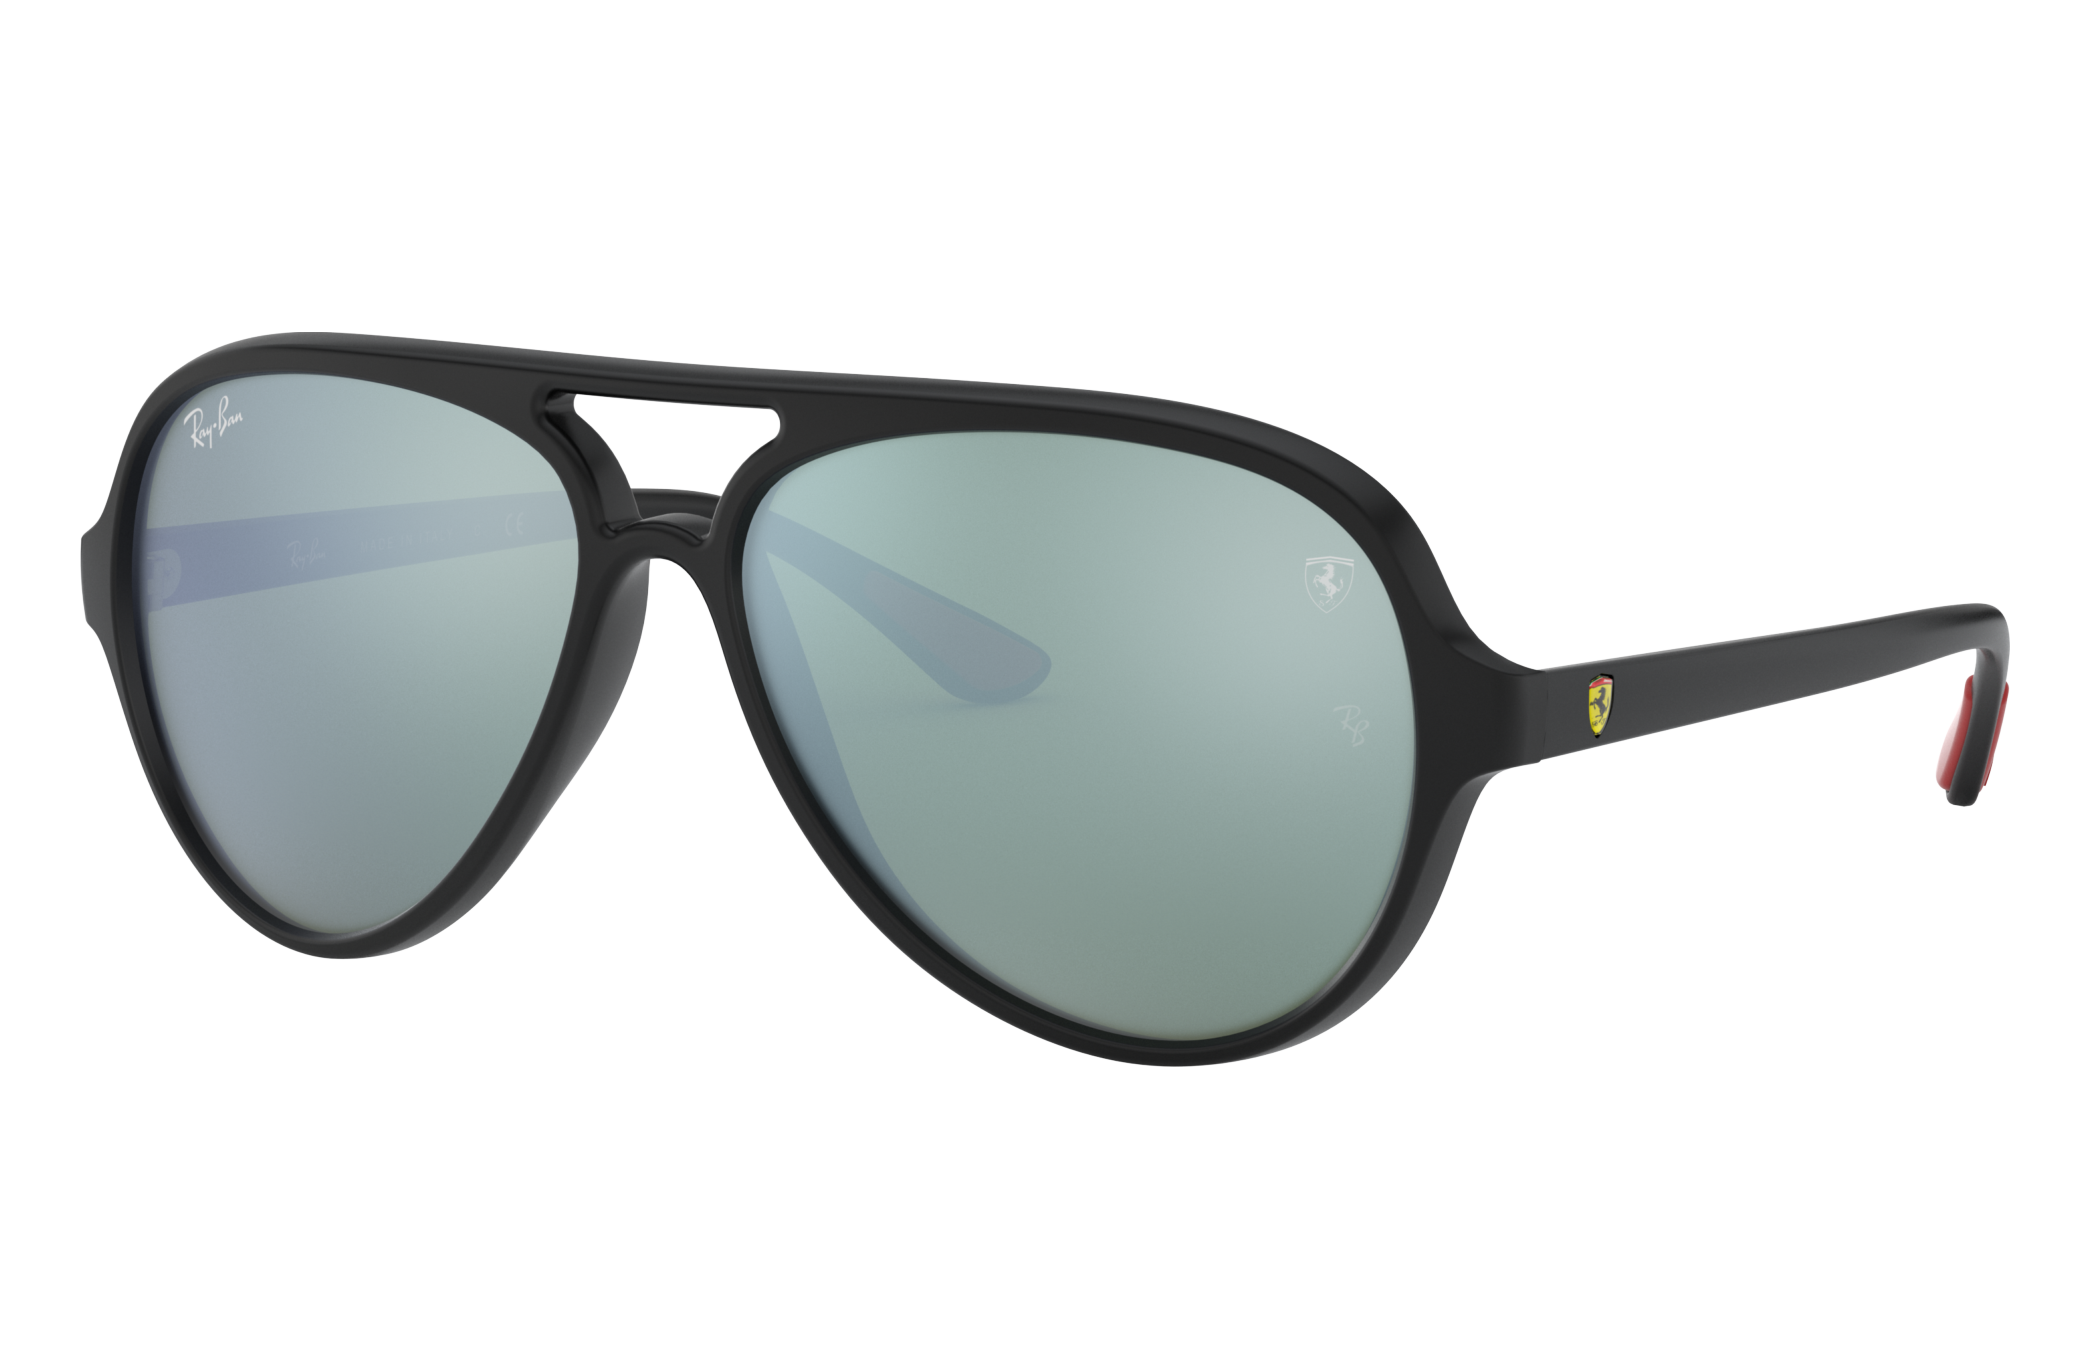 Rb4125m Scuderia Ferrari Collection Sunglasses in Black and Silver | Ray-Ban ®